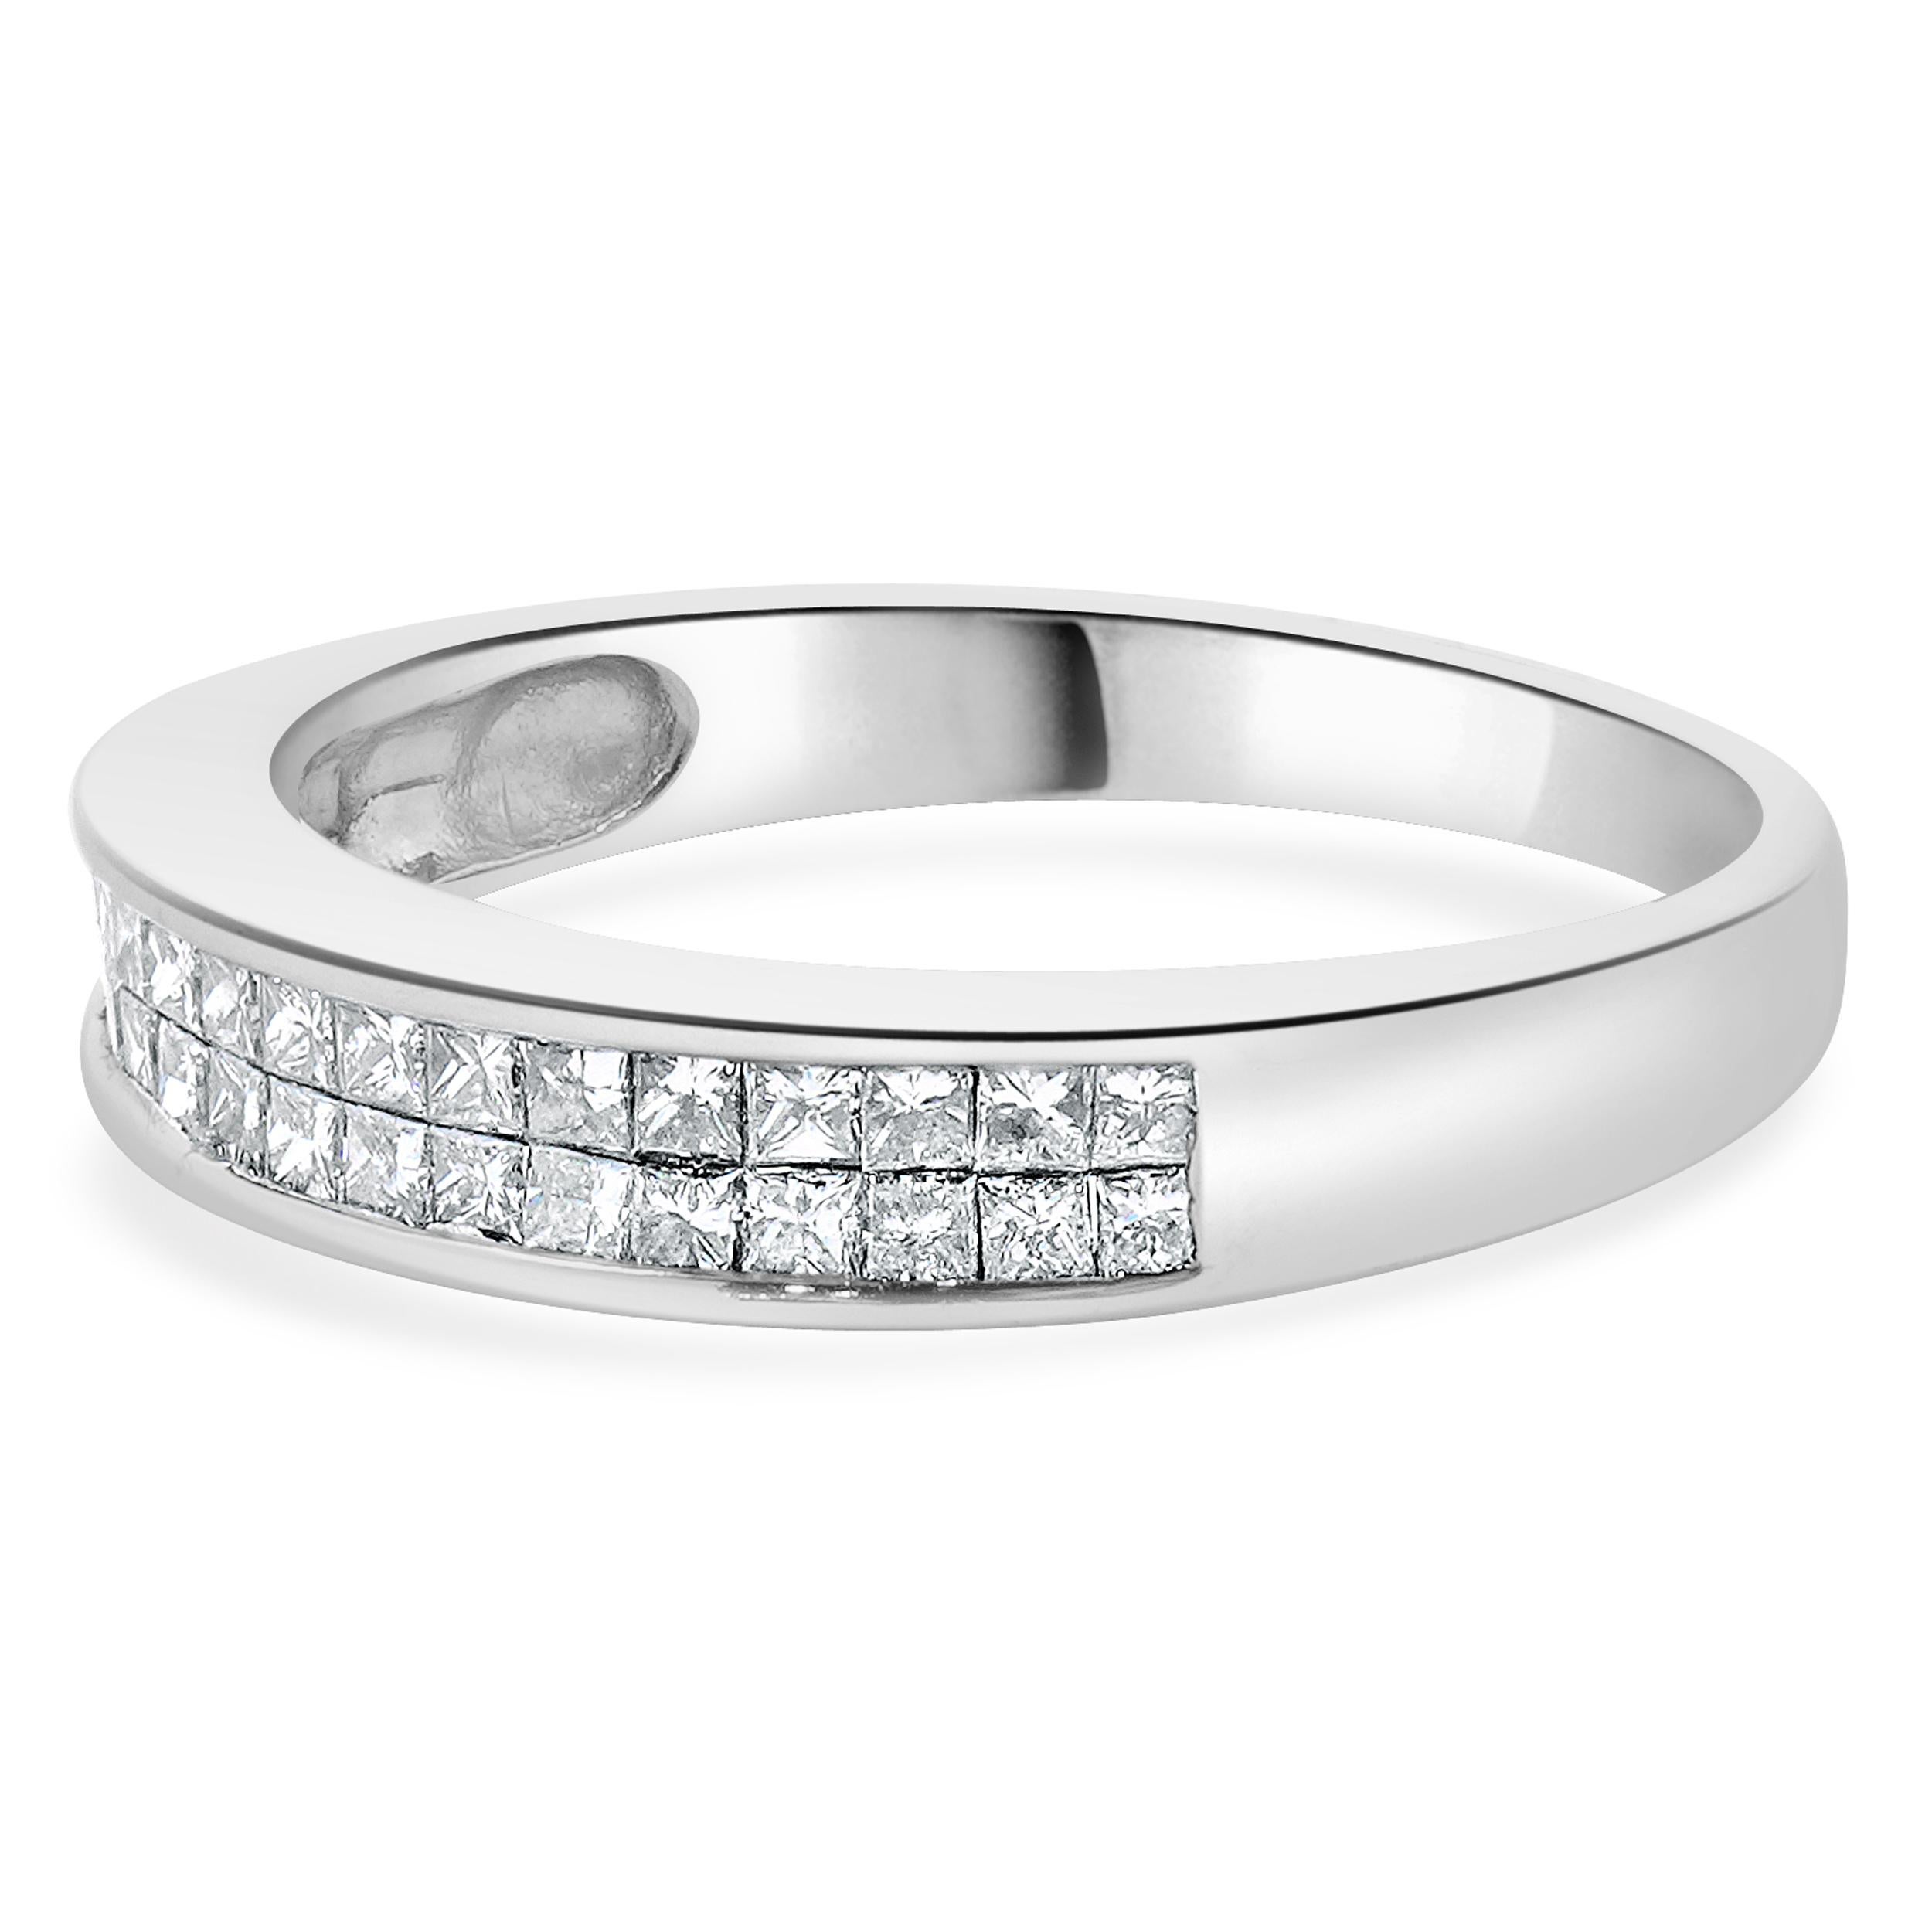 Designer: Benutzerdefiniert
MATERIAL: 14K Weißgold
Diamanten: 36 im Prinzessinnenschliff = 0,90cttw
Farbe: H
Klarheit: SI1-2
Größe: 7.5 Größe verfügbar 
Abmessungen: Ringe mit einer Breite von 4 mm
Gewicht: 3.30 Gramm